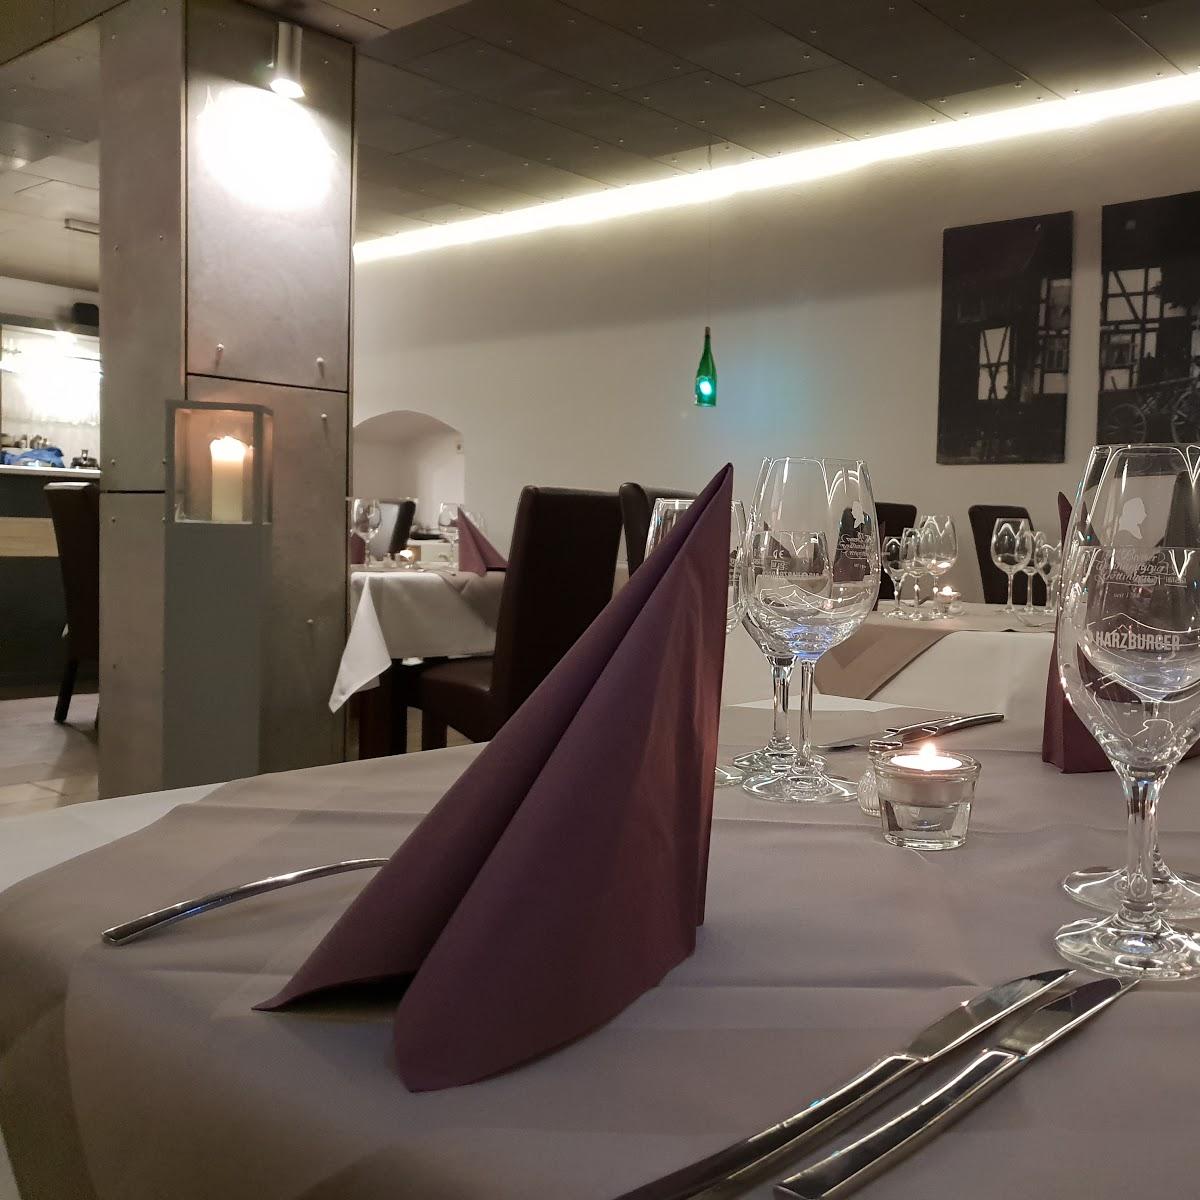 Restaurant "Restaurant Kuckuck - Im Auftrag der Genüsse - Catering, Partyservice, Festlichkeiten" in  Göttingen